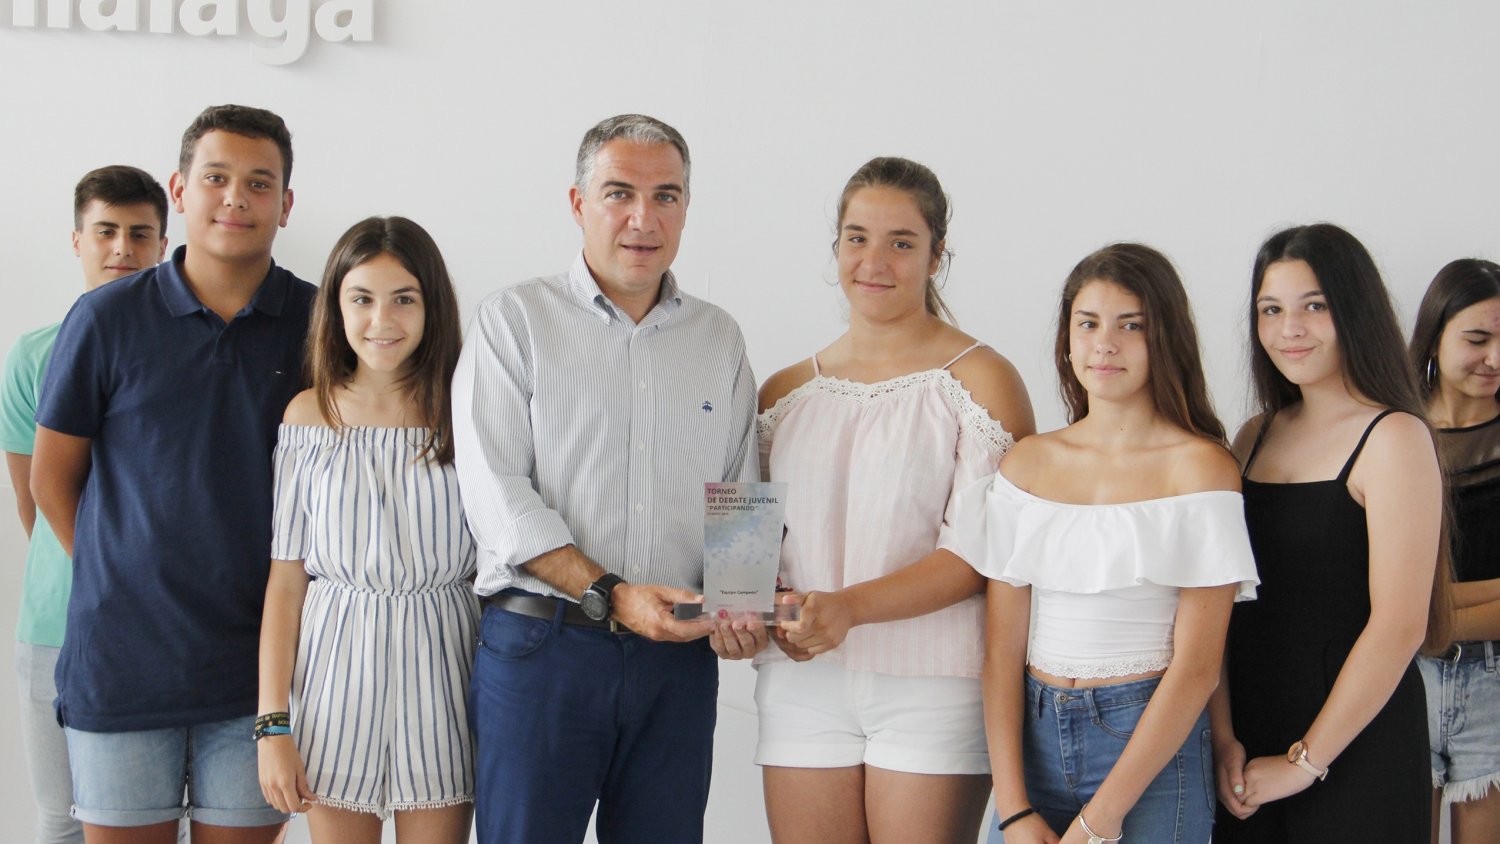 La Diputación fomenta el debate entre jóvenes como herramienta educativa con el torneo 'Participando'